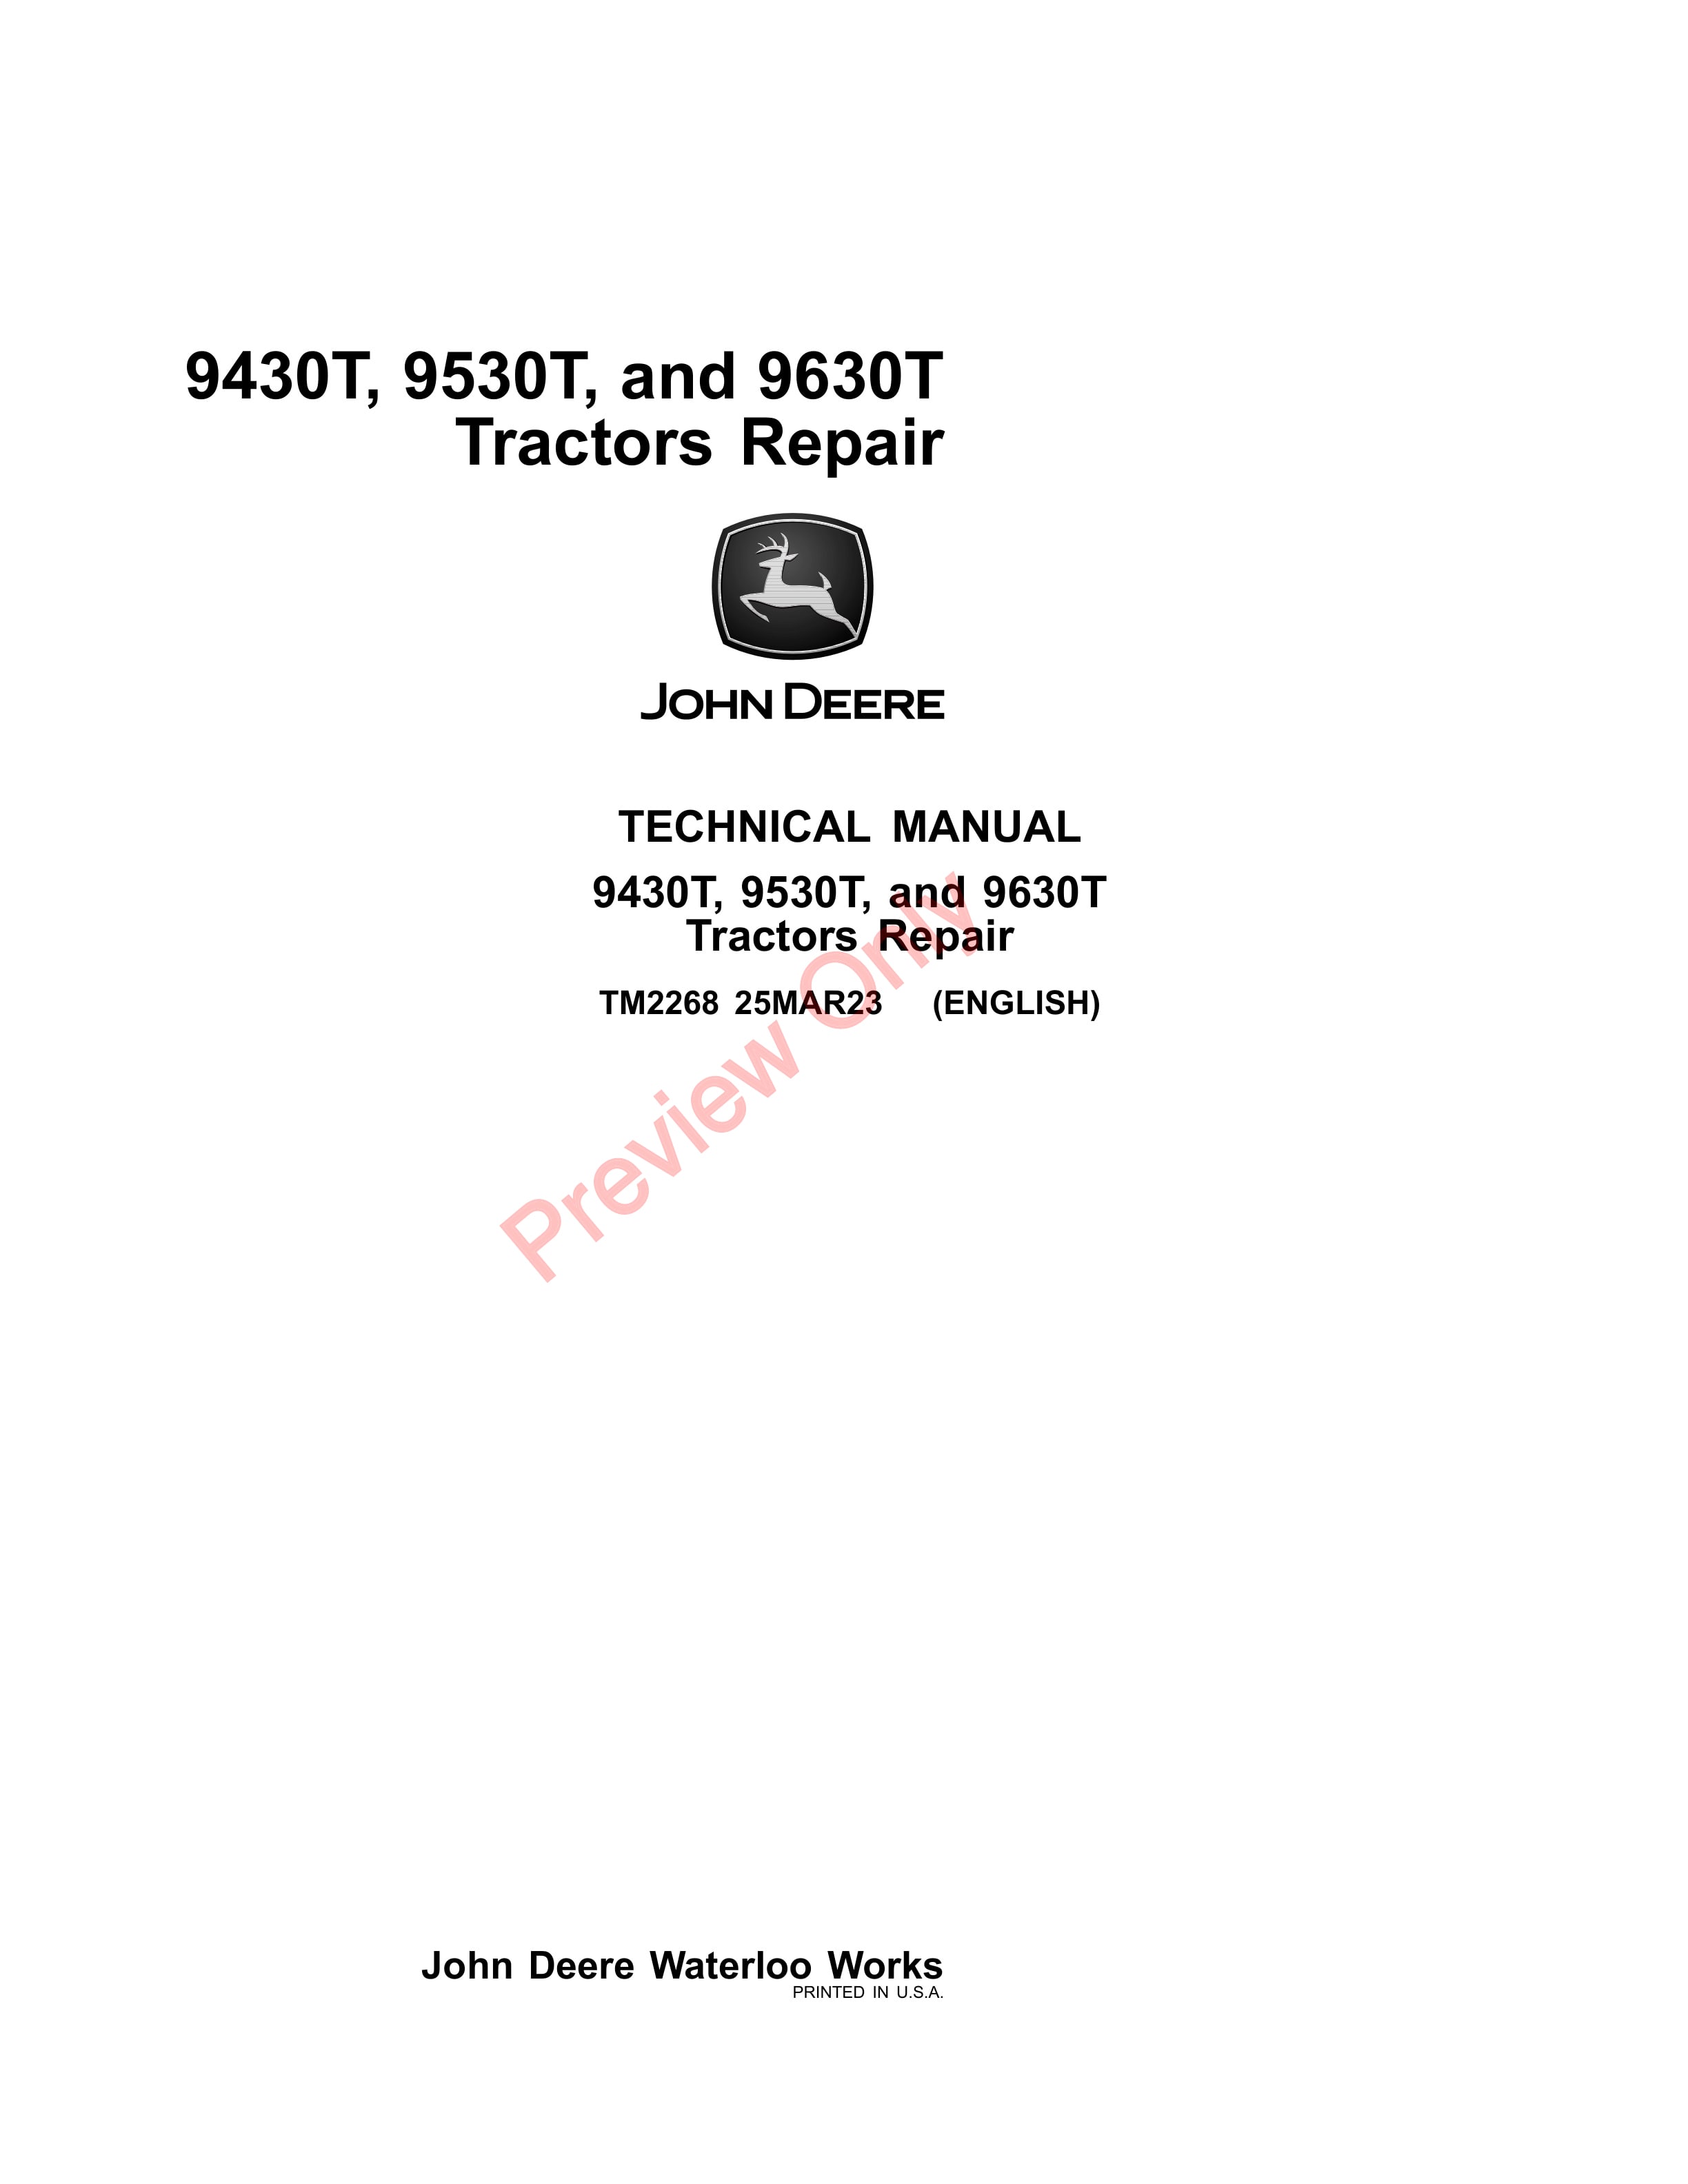 John Deere 9430T 9530T and 9630T Tractors Technical Manual TM2268 25MAR23 1